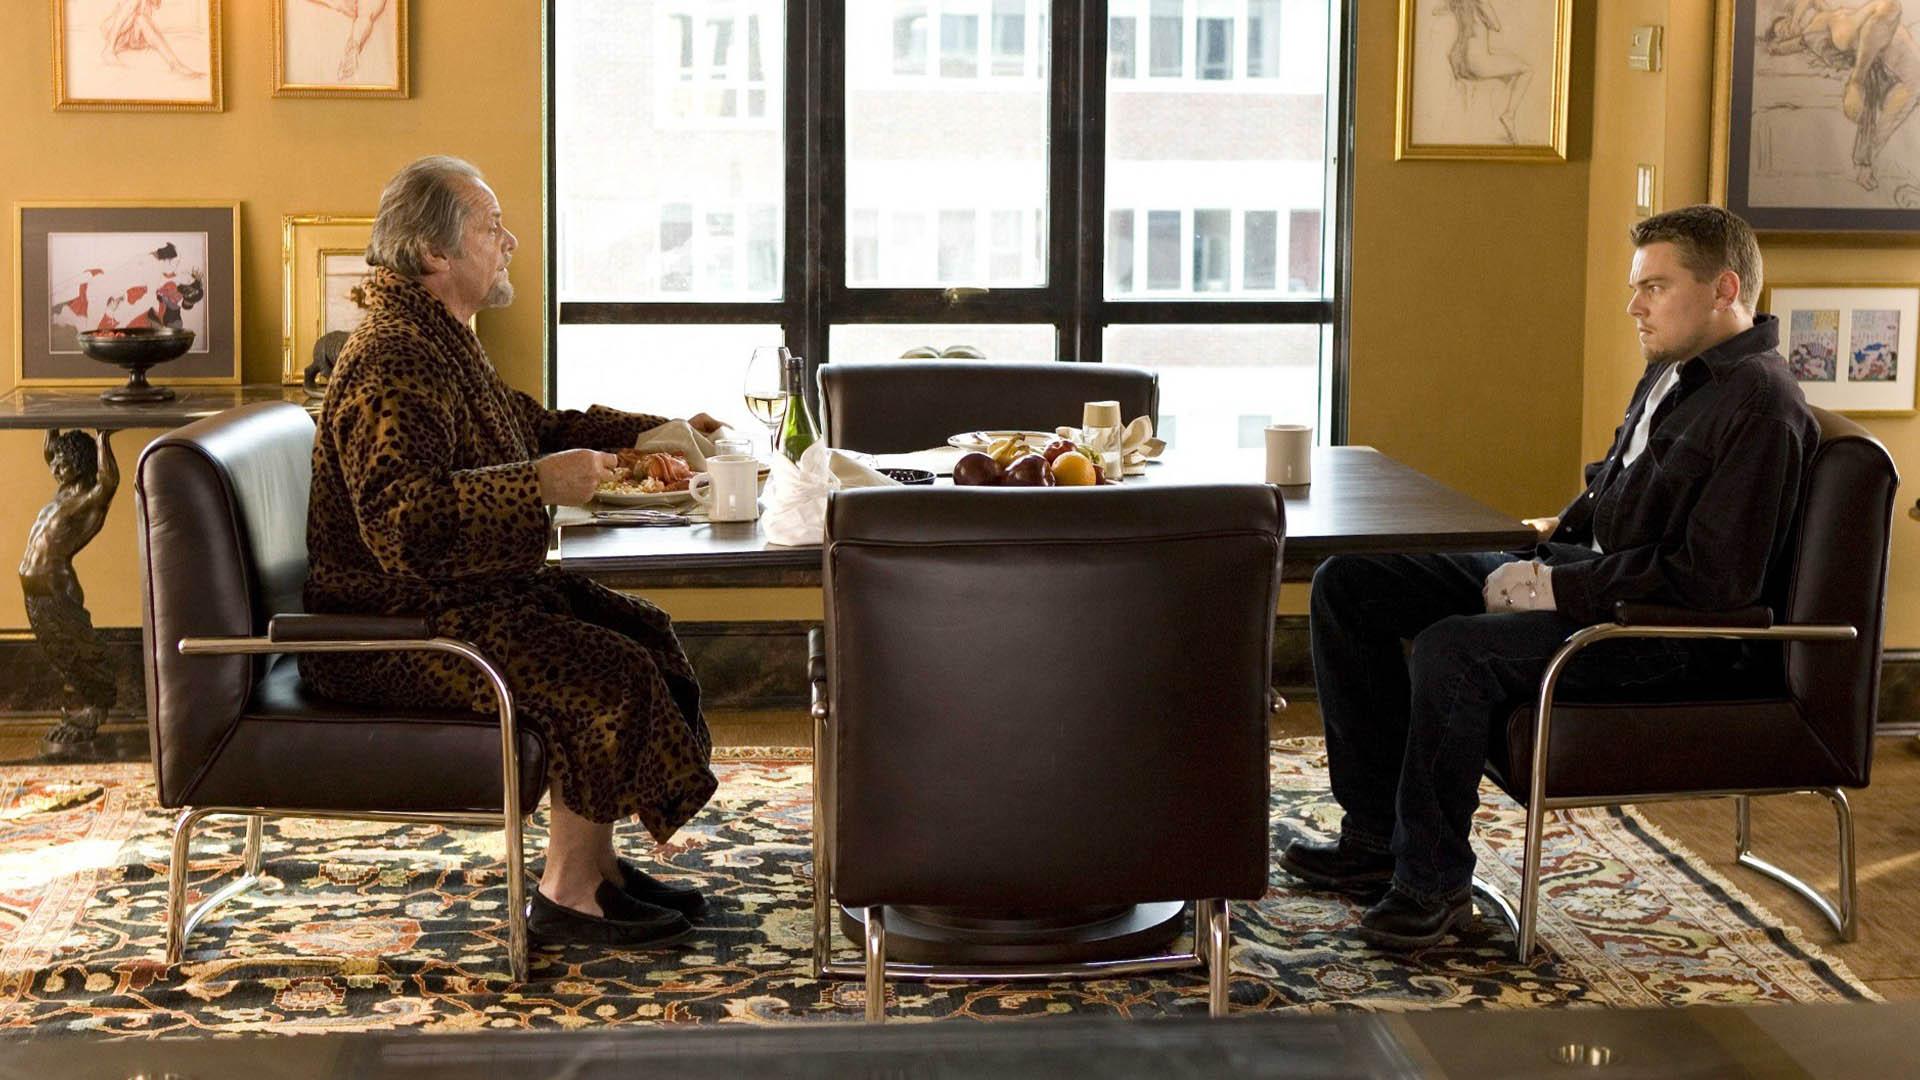 فرانک کاستلو درحال صحبت کردن با شخصیت بیلی در فیلم The Departed